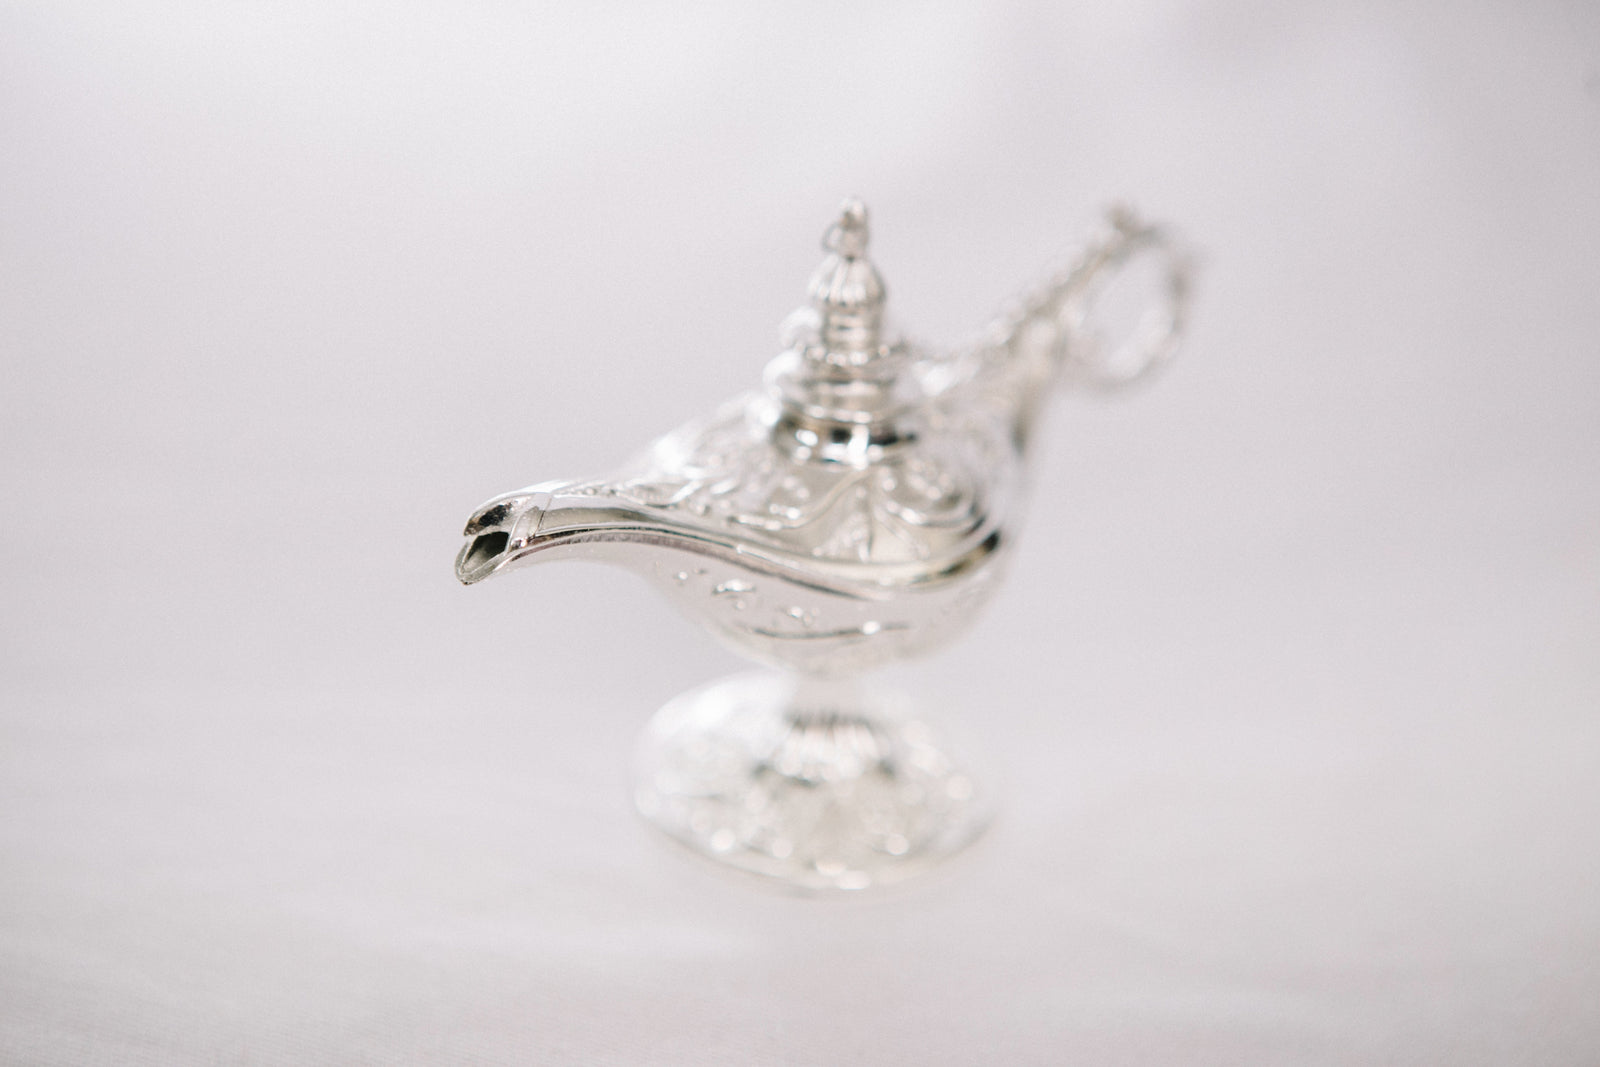 Decorative Lamp - Silver